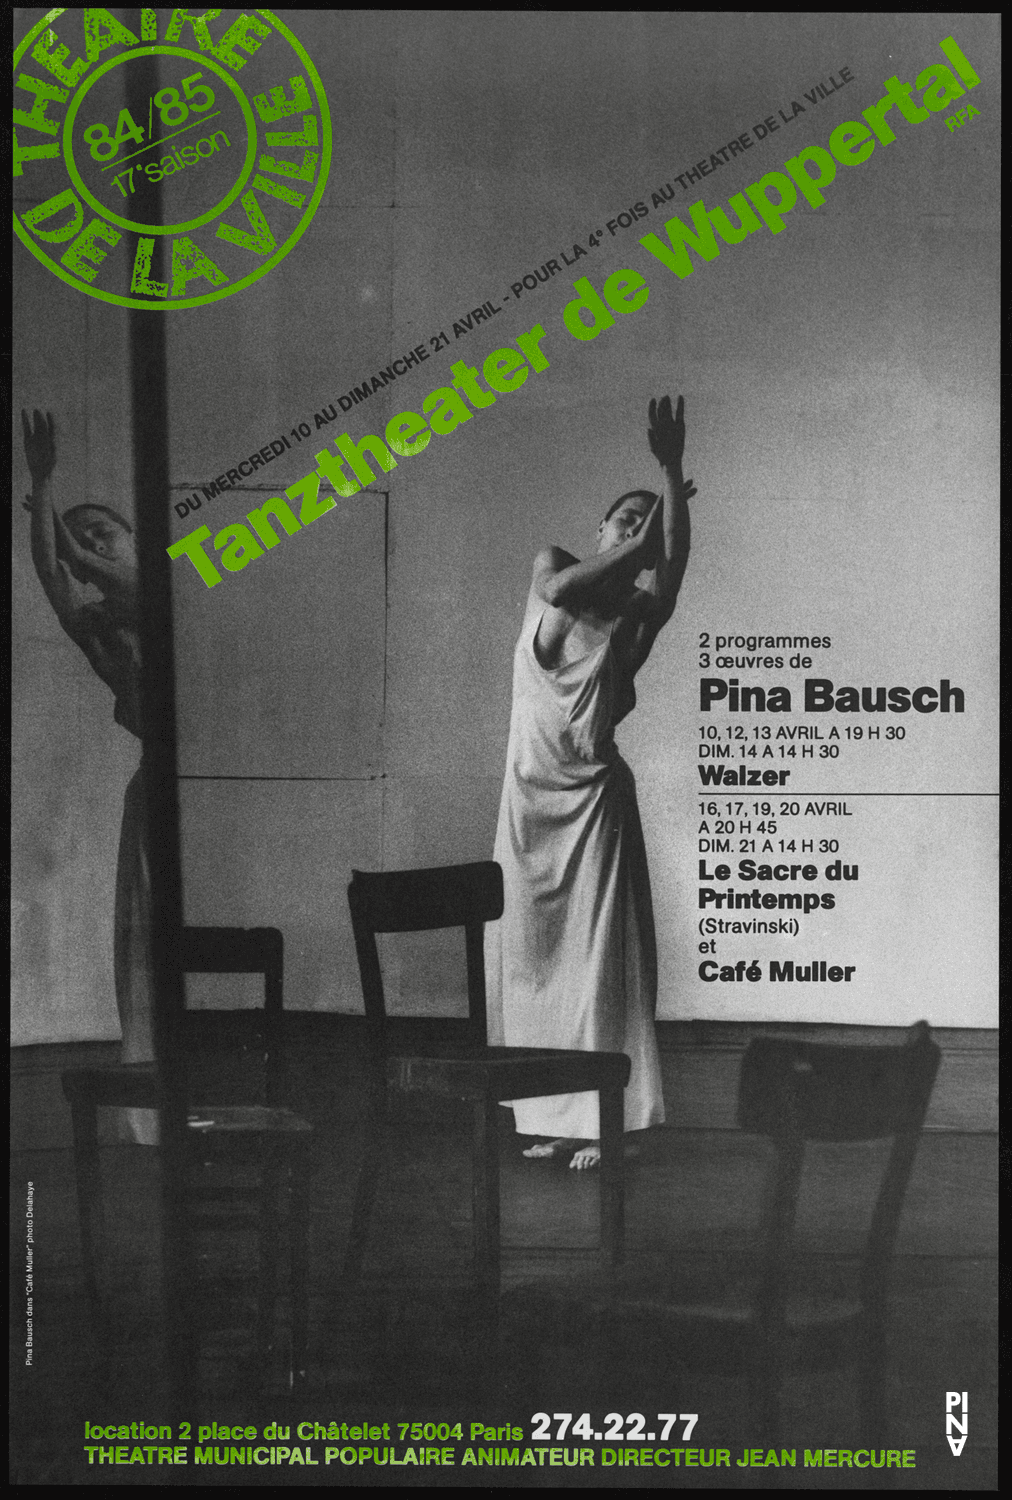 Plakat zu „Café Müller“, „Das Frühlingsopfer“ und „Walzer“ von Pina Bausch in Paris, 10.04.1985–20.04.1985